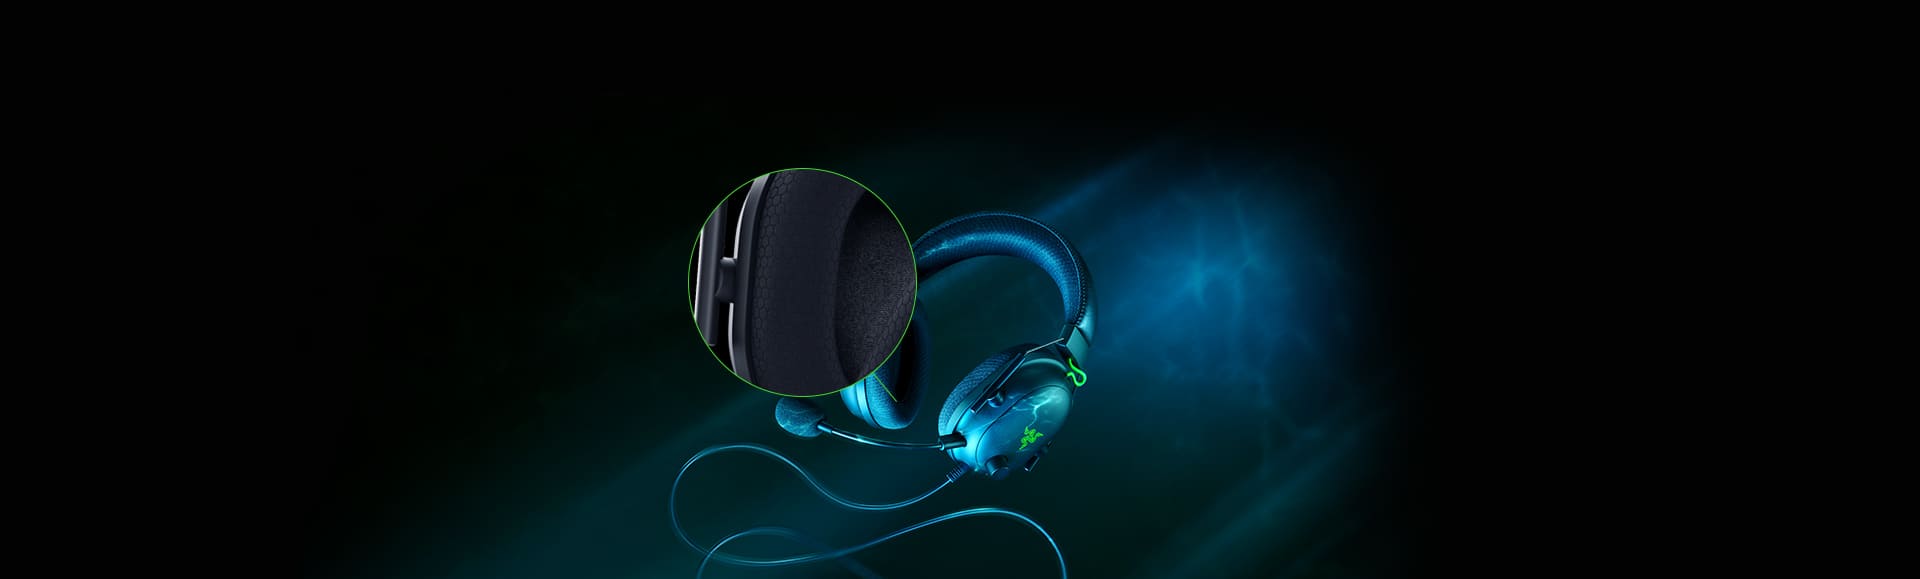 Razer BlackShark V2 Gaming Wired Headphones